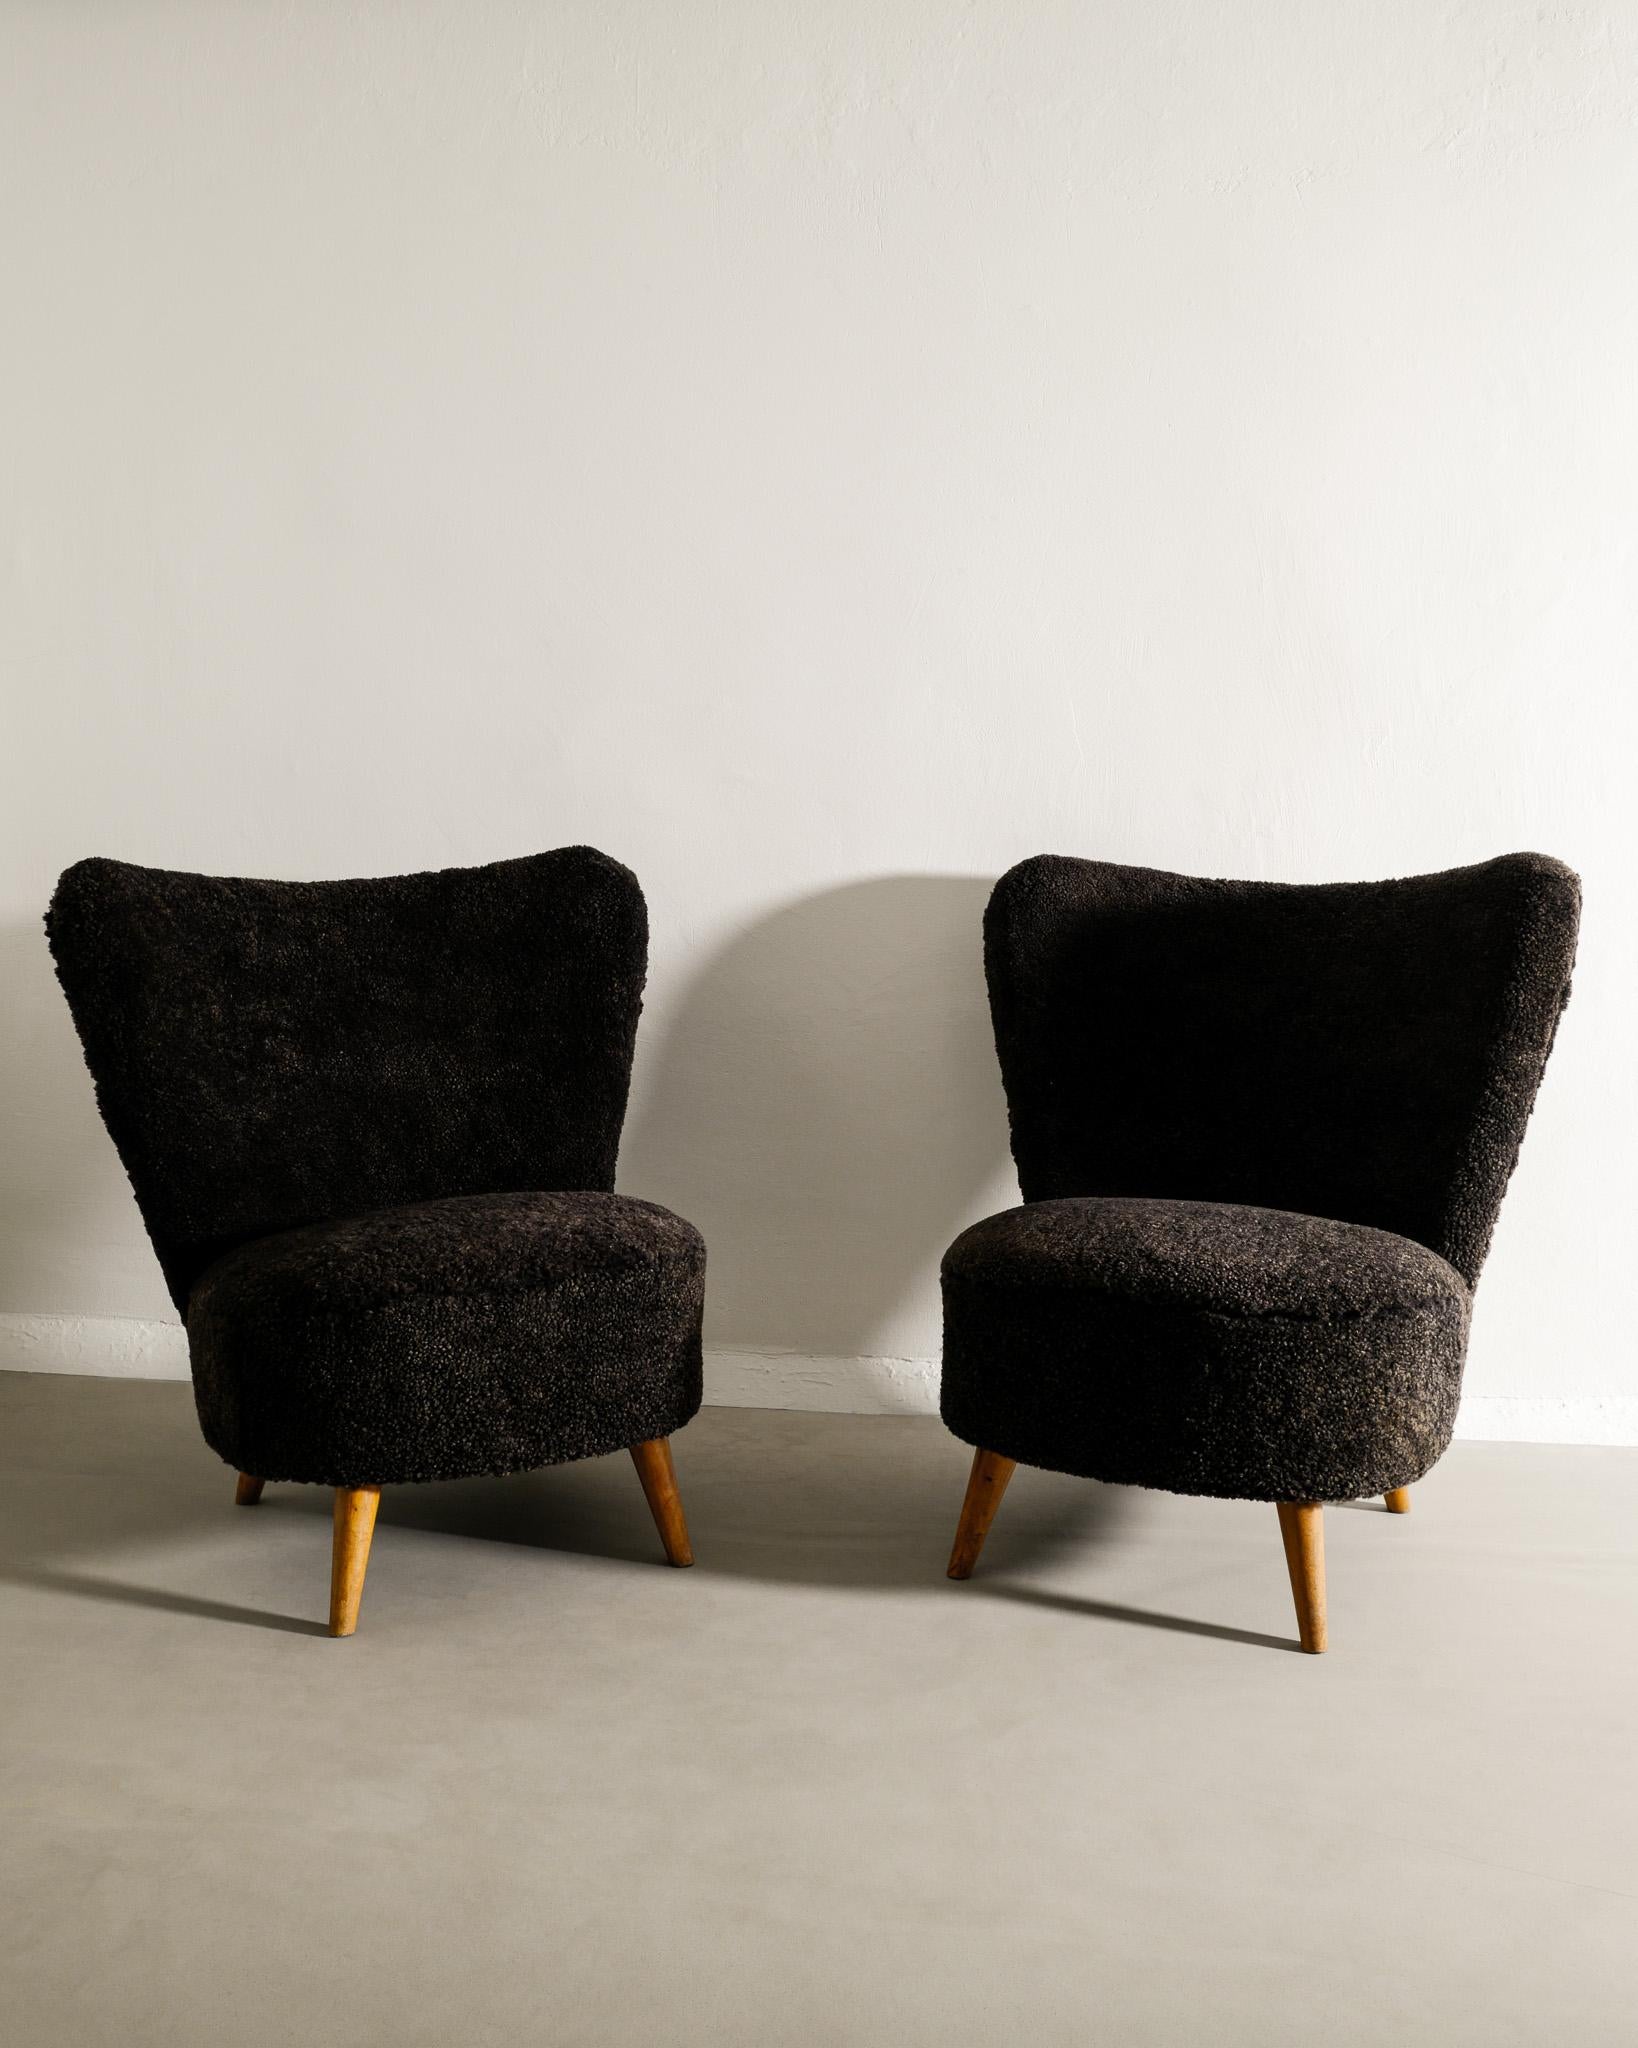 Rare paire de fauteuils du milieu du siècle produite en Suède dans le style de Gösta Jonsson. En excellent état vintage. Les deux chaises viennent d'être restaurées professionnellement et recouvertes d'une peau de mouton marron foncé. 

Dimensions :